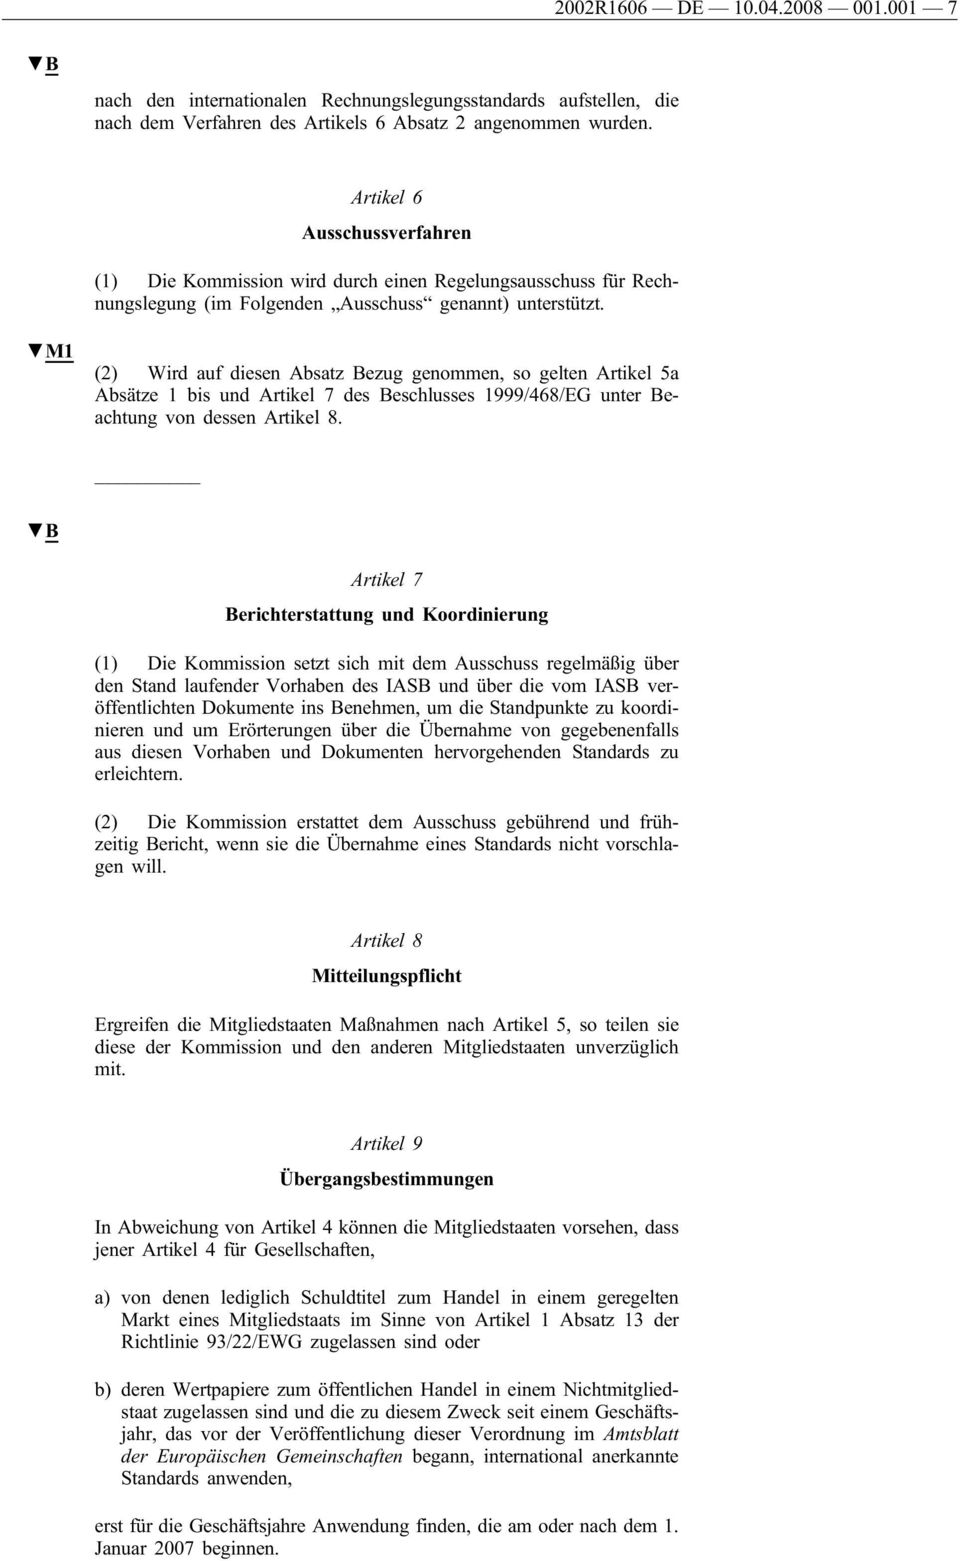 M1 (2) Wird auf diesen Absatz Bezug genommen, so gelten Artikel 5a Absätze 1 bis und Artikel 7 des Beschlusses 1999/468/EG unter Beachtung von dessen Artikel 8.